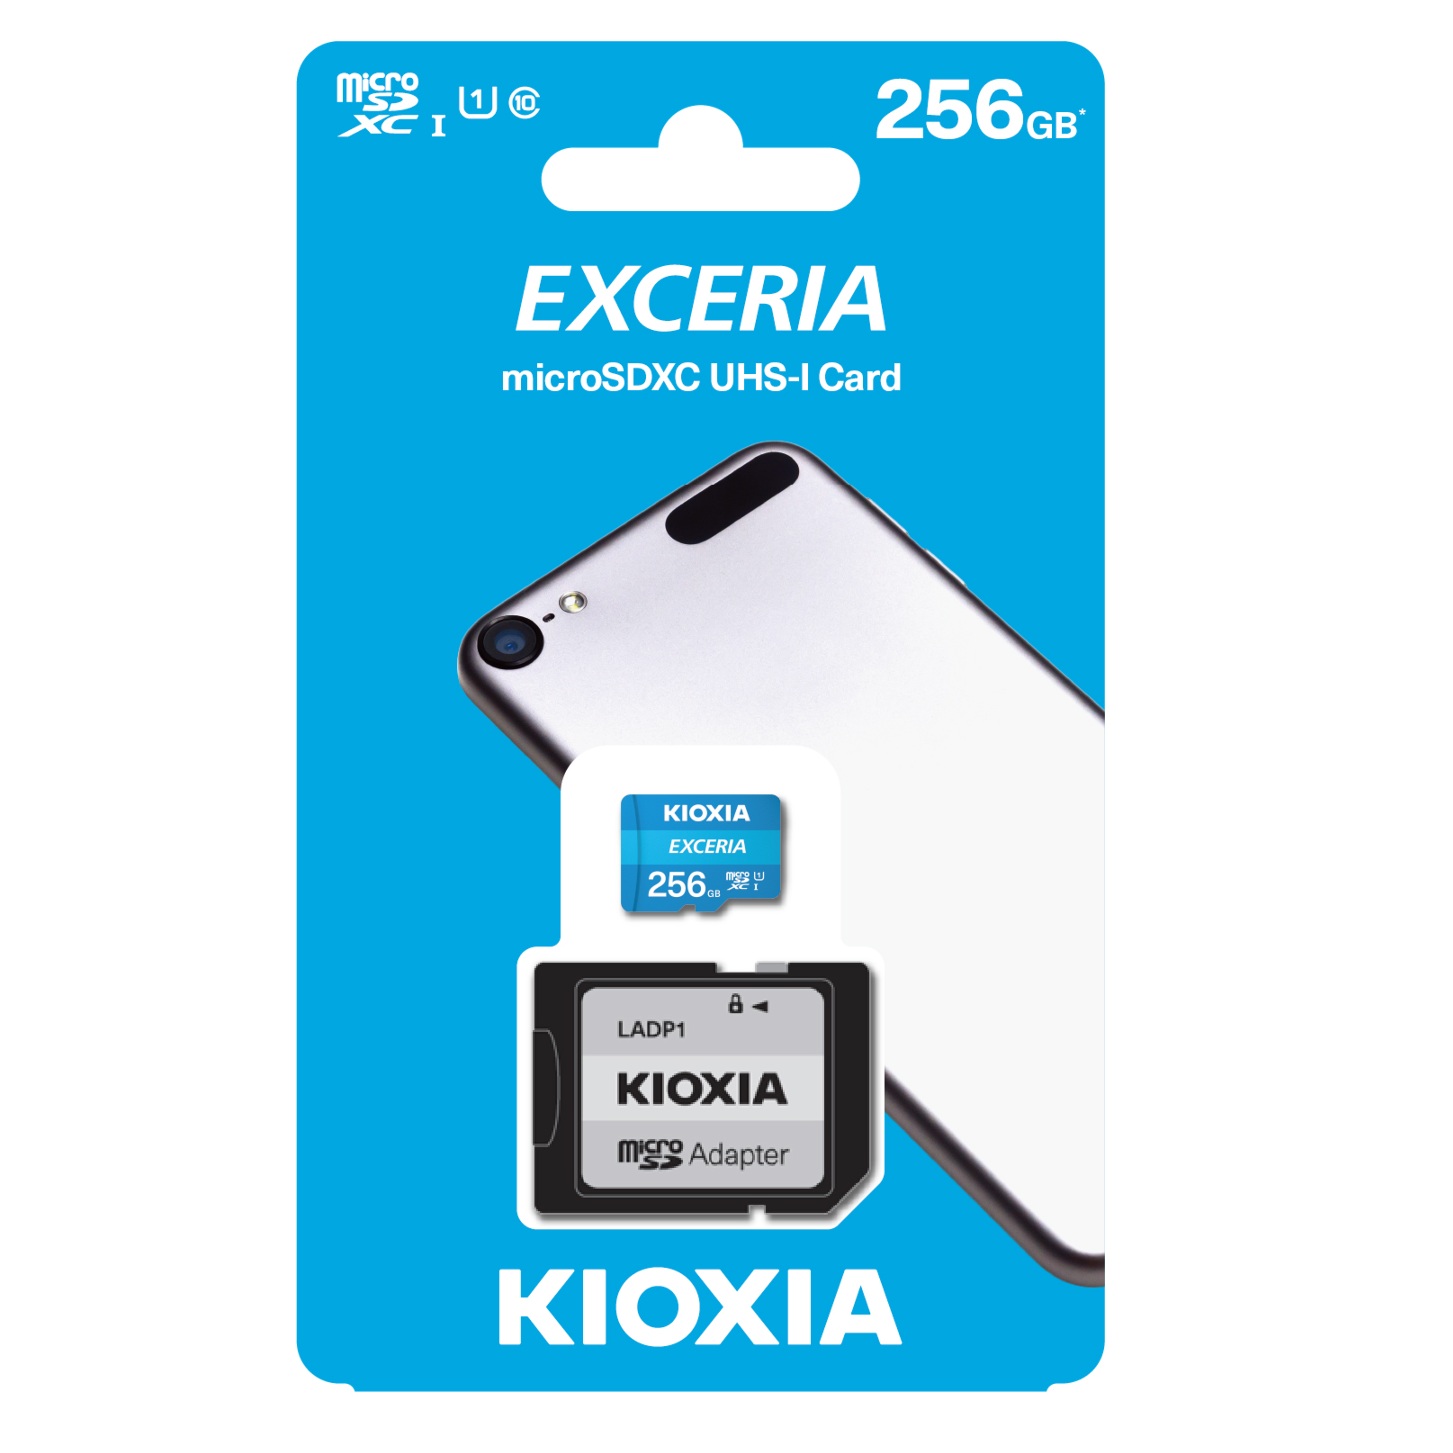 کارت حافظه‌ microSDHC کیوکسیا مدل EXCERIA کلاس 10 استاندارد UHS-I U1 سرعت 100MBps ظرفیت 256 گیگابایت به همراه آداپتور SD